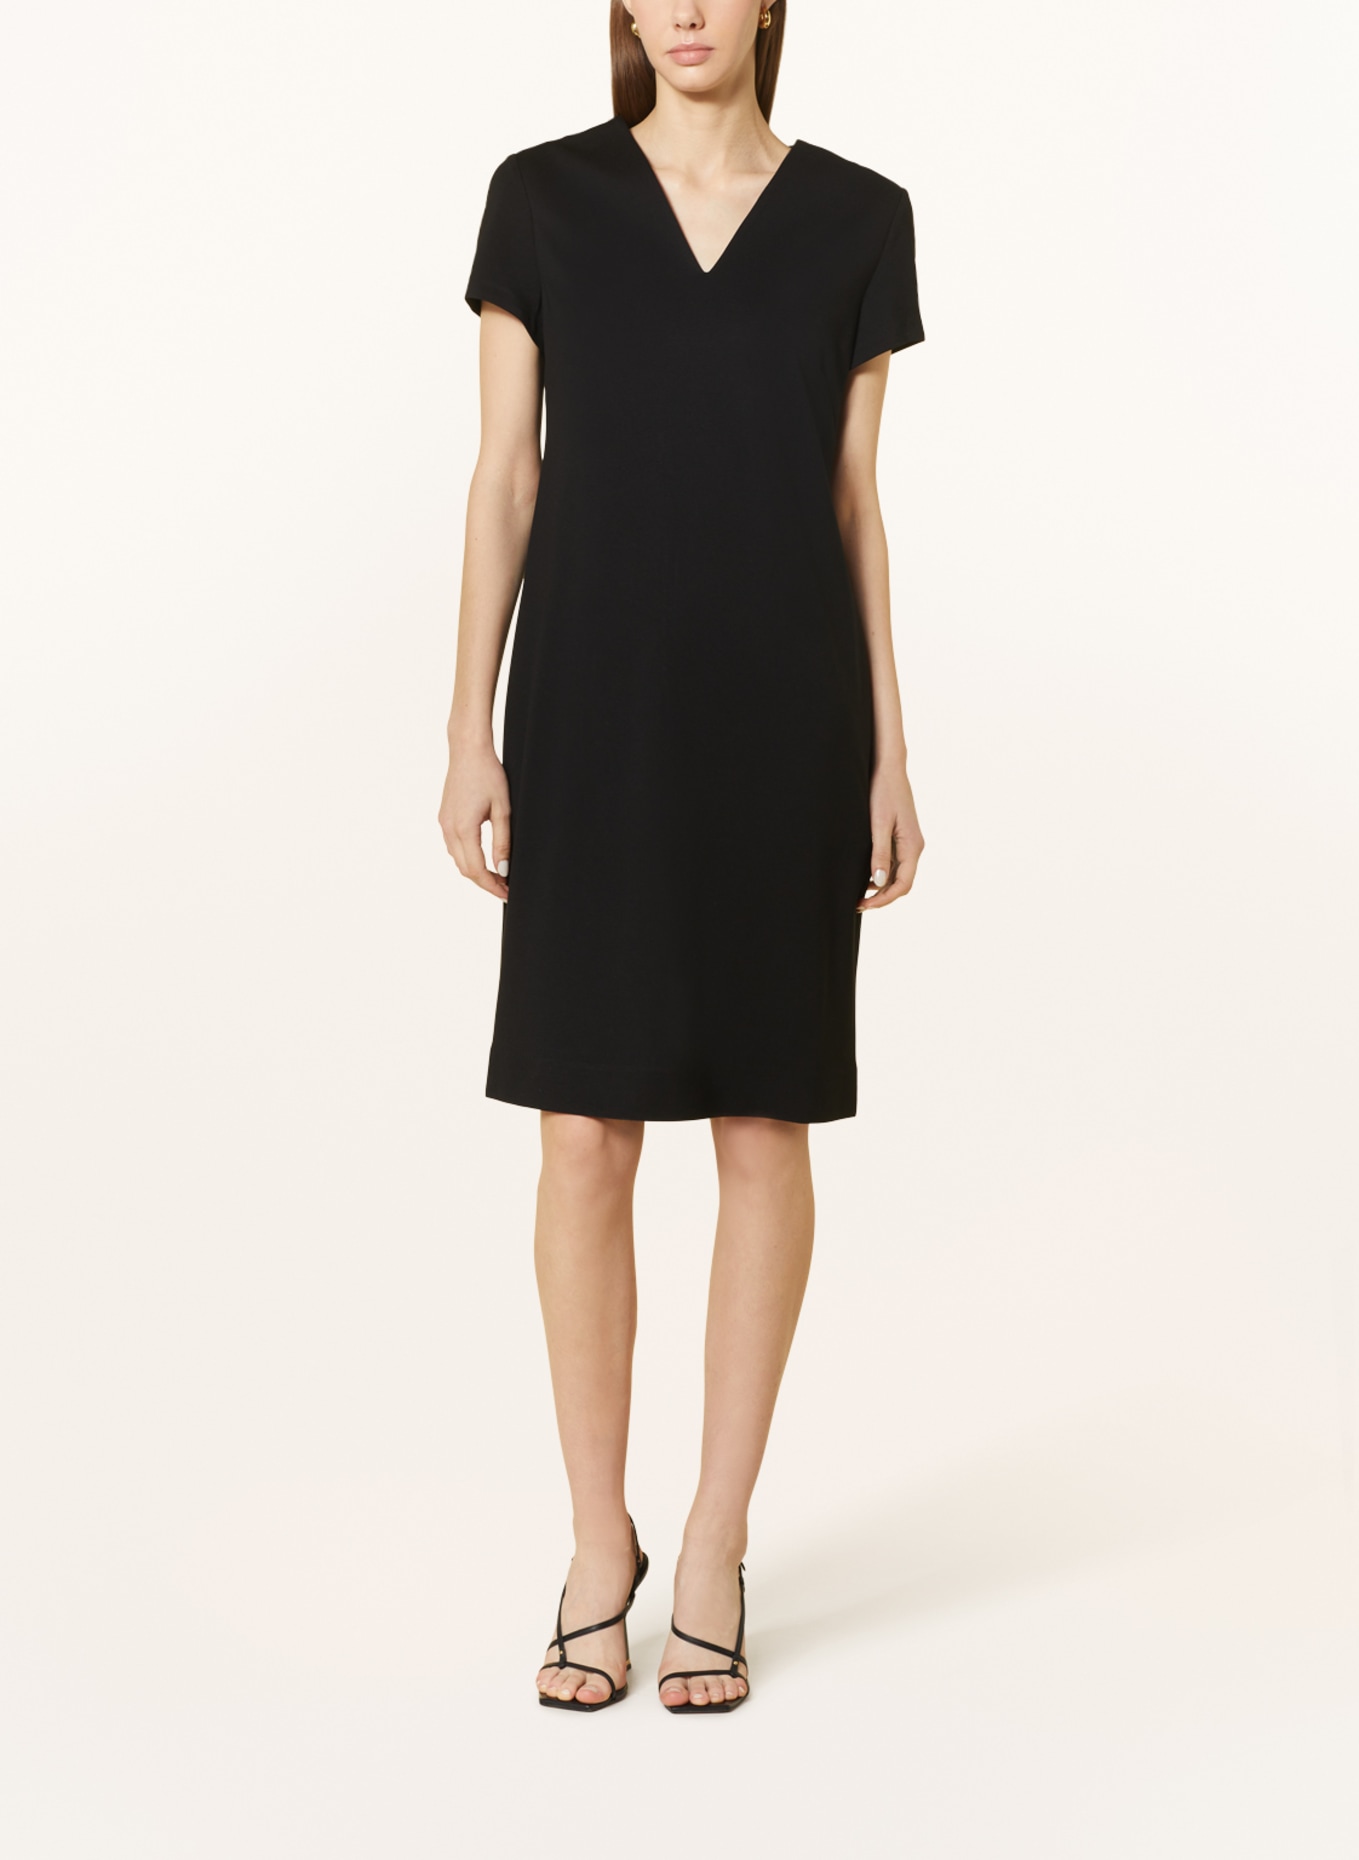 CATNOIR Dress, Color: BLACK (Image 2)